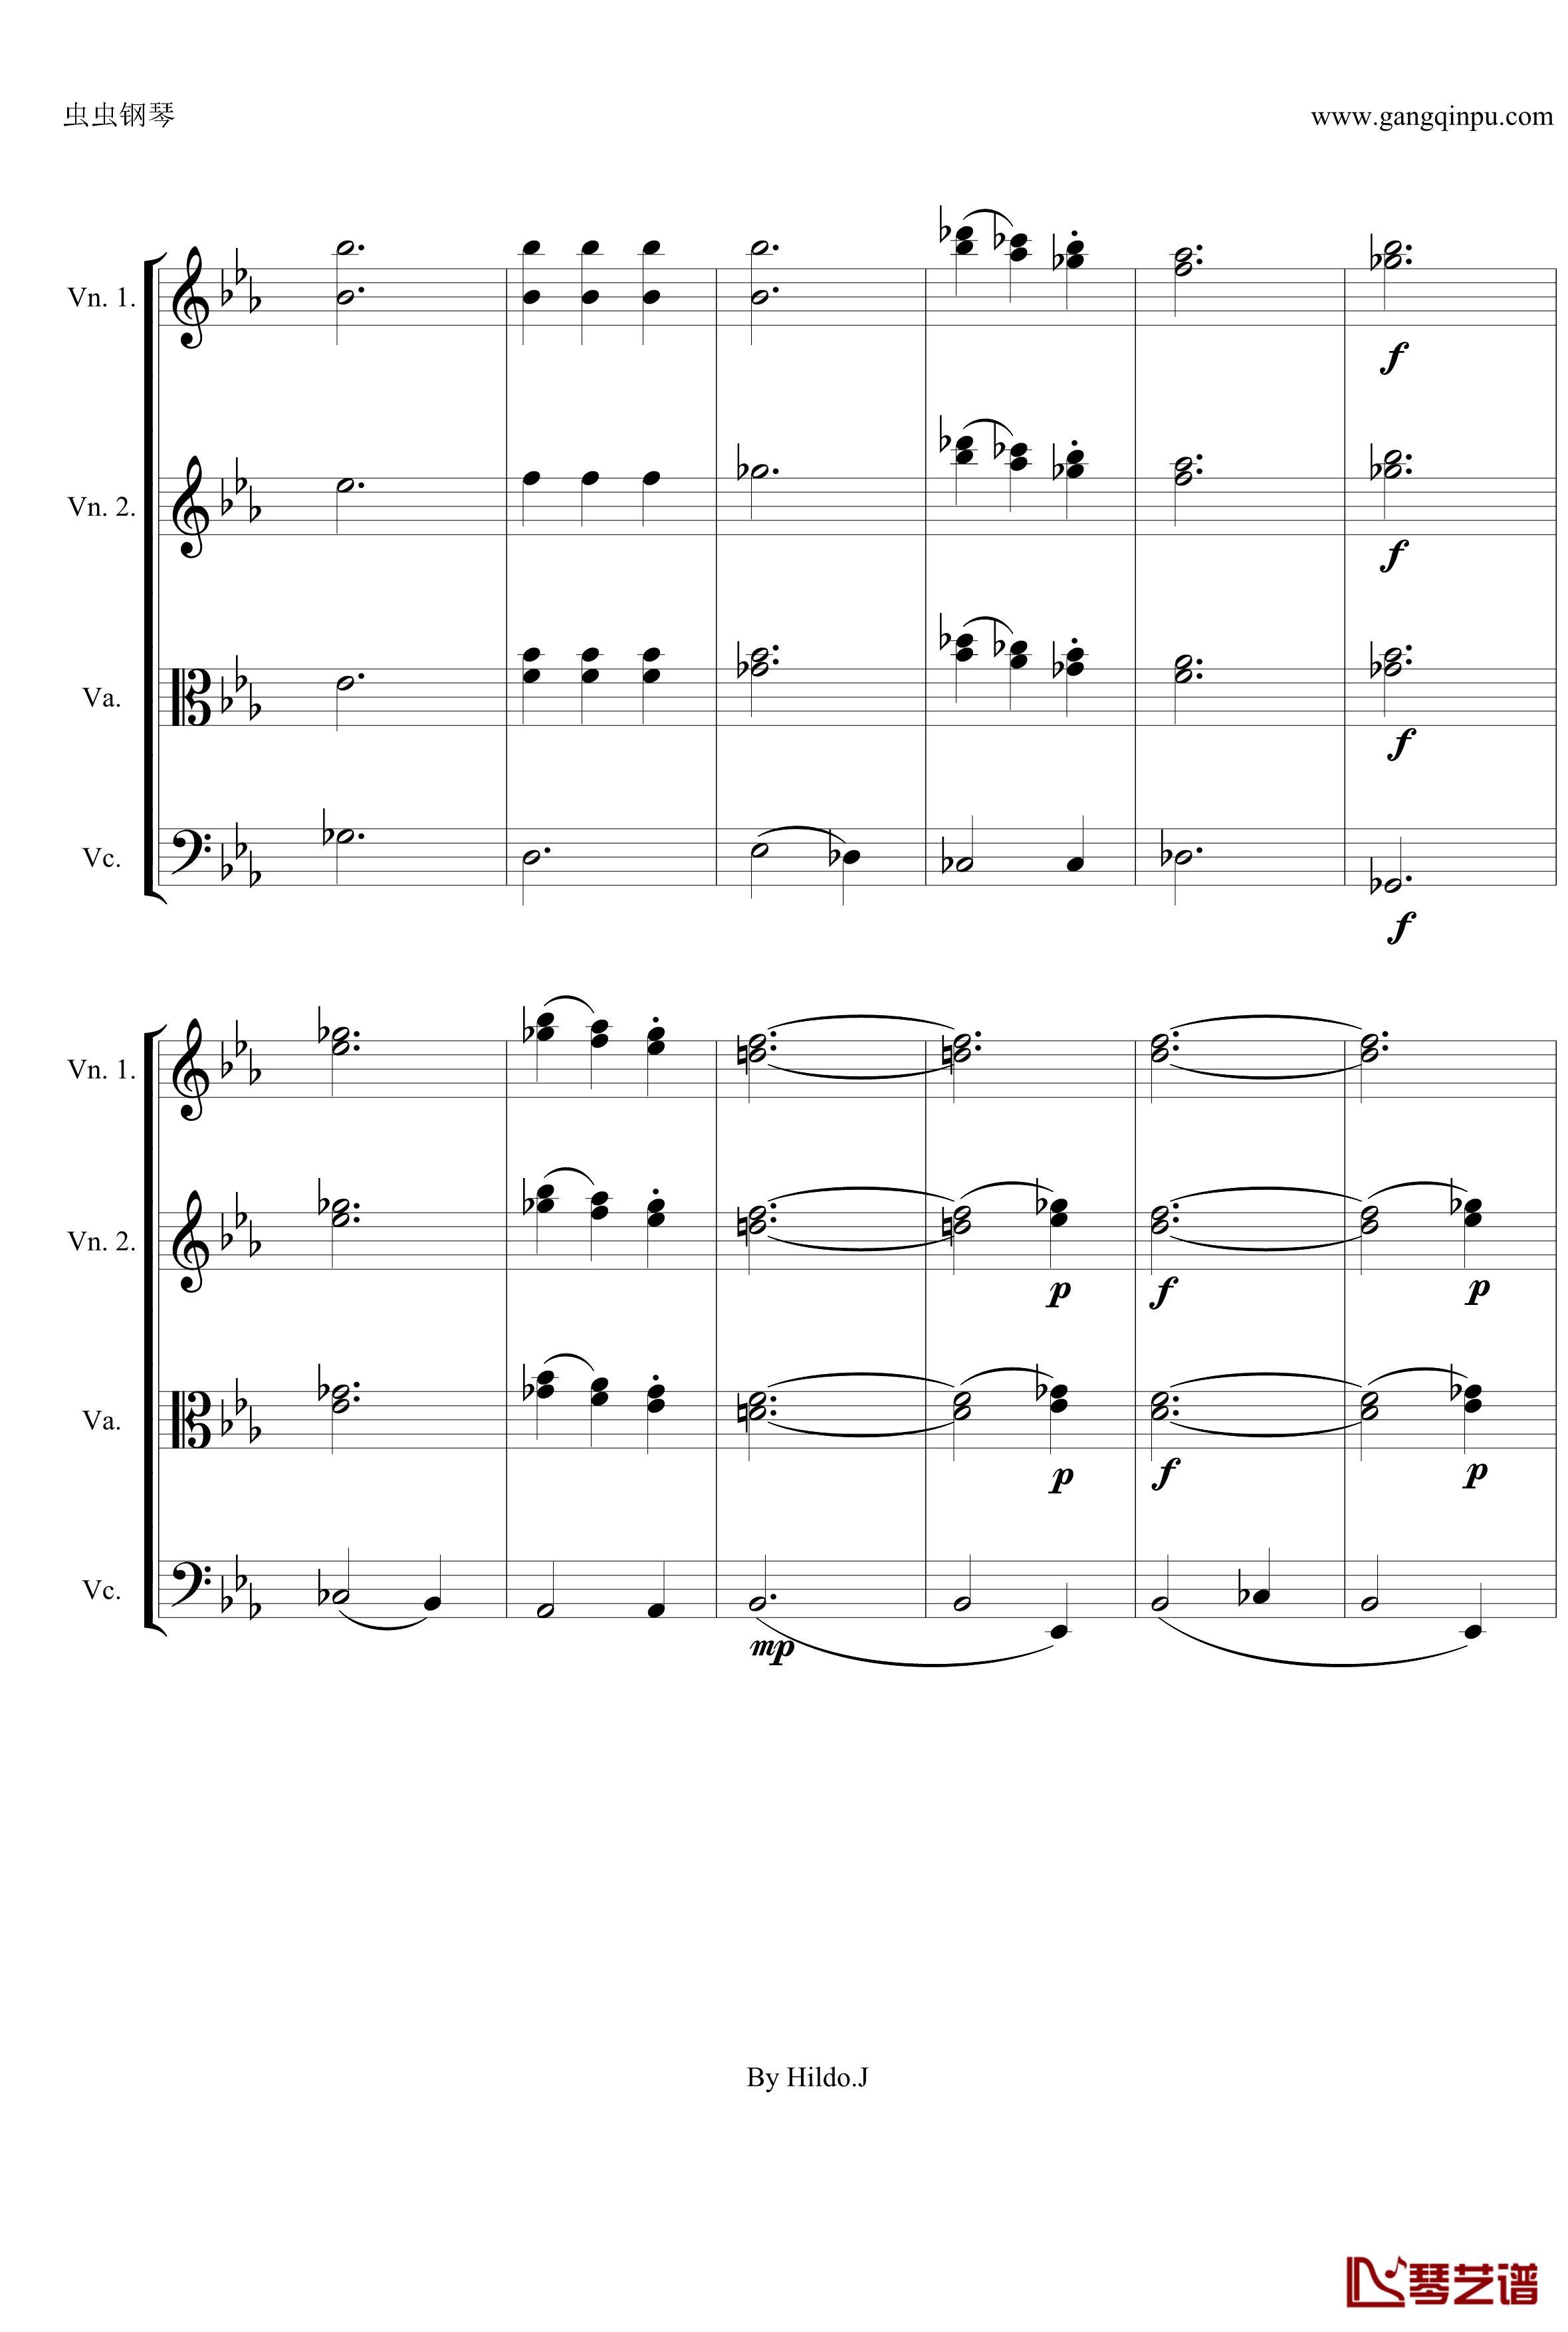 命运交响曲第三乐章钢琴谱-弦乐版-贝多芬-beethoven3